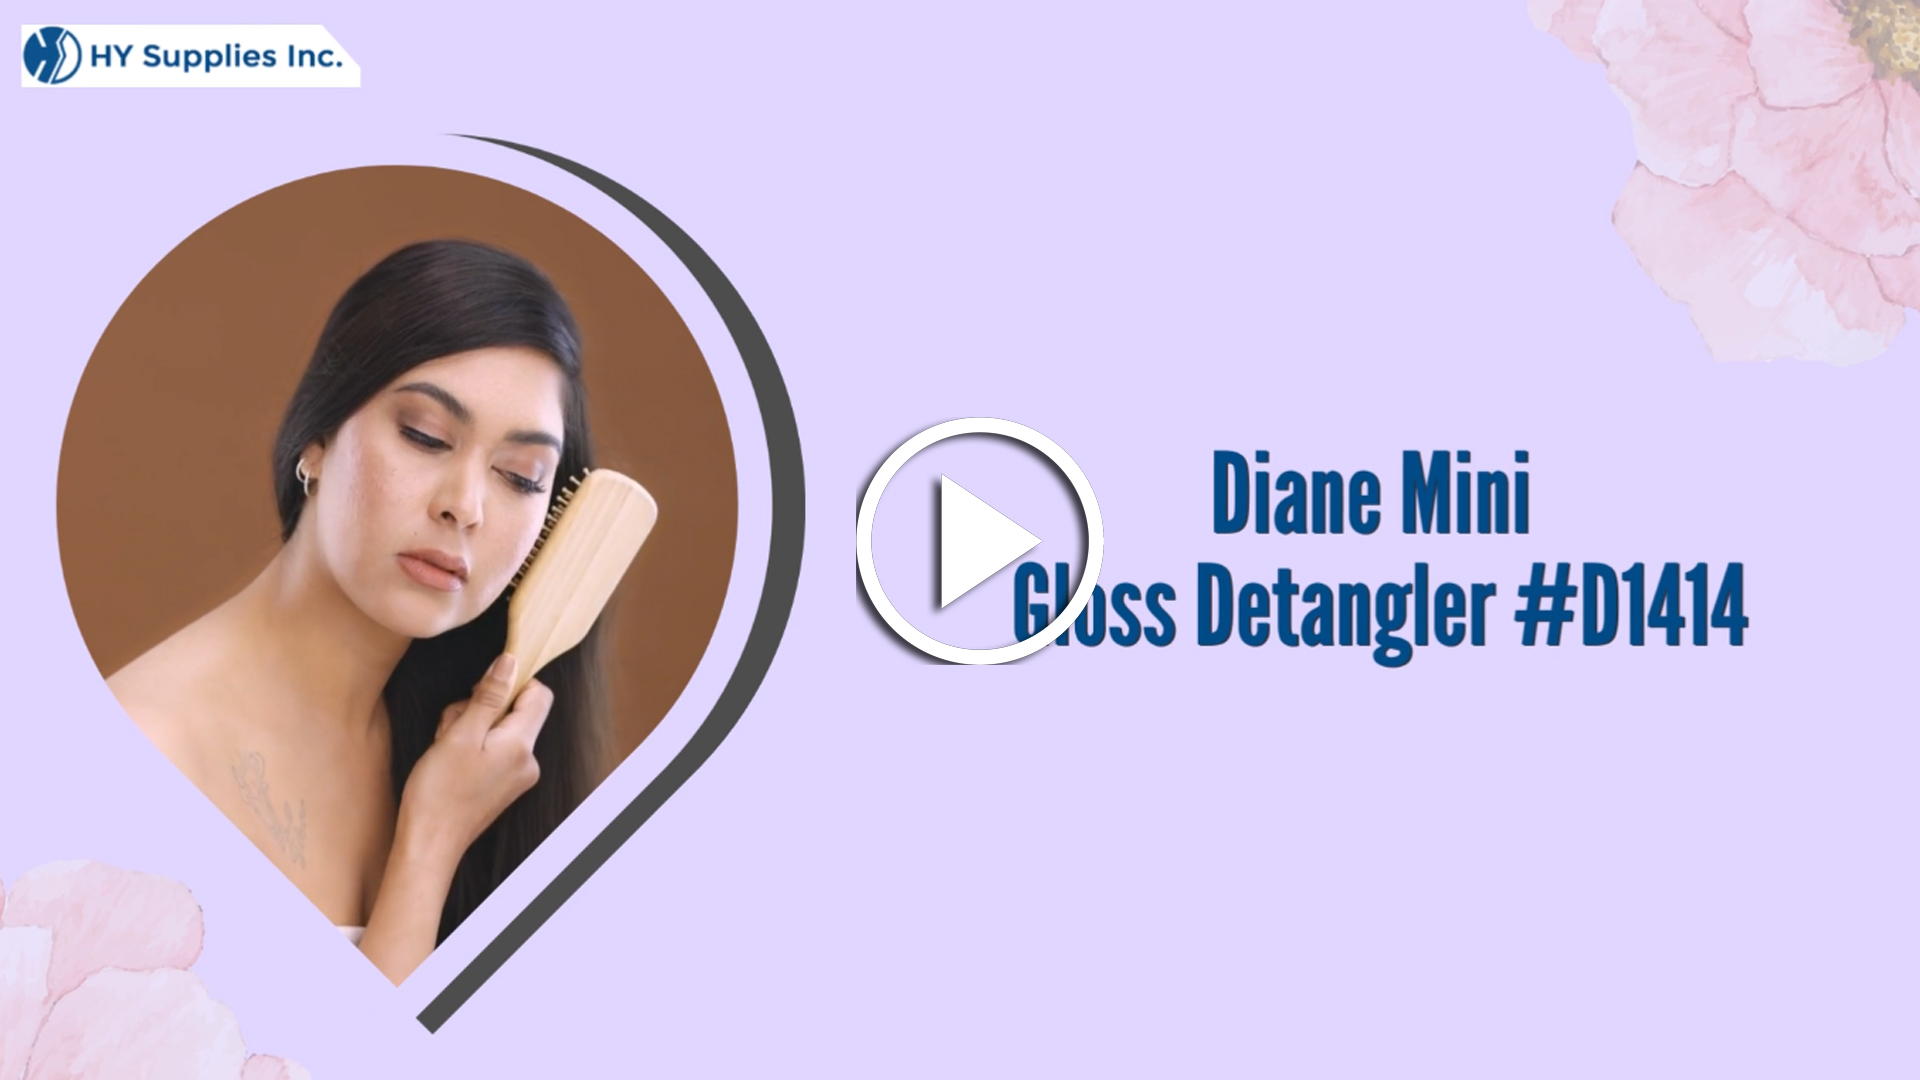 Diane Mini Gloss Detangler-D1414